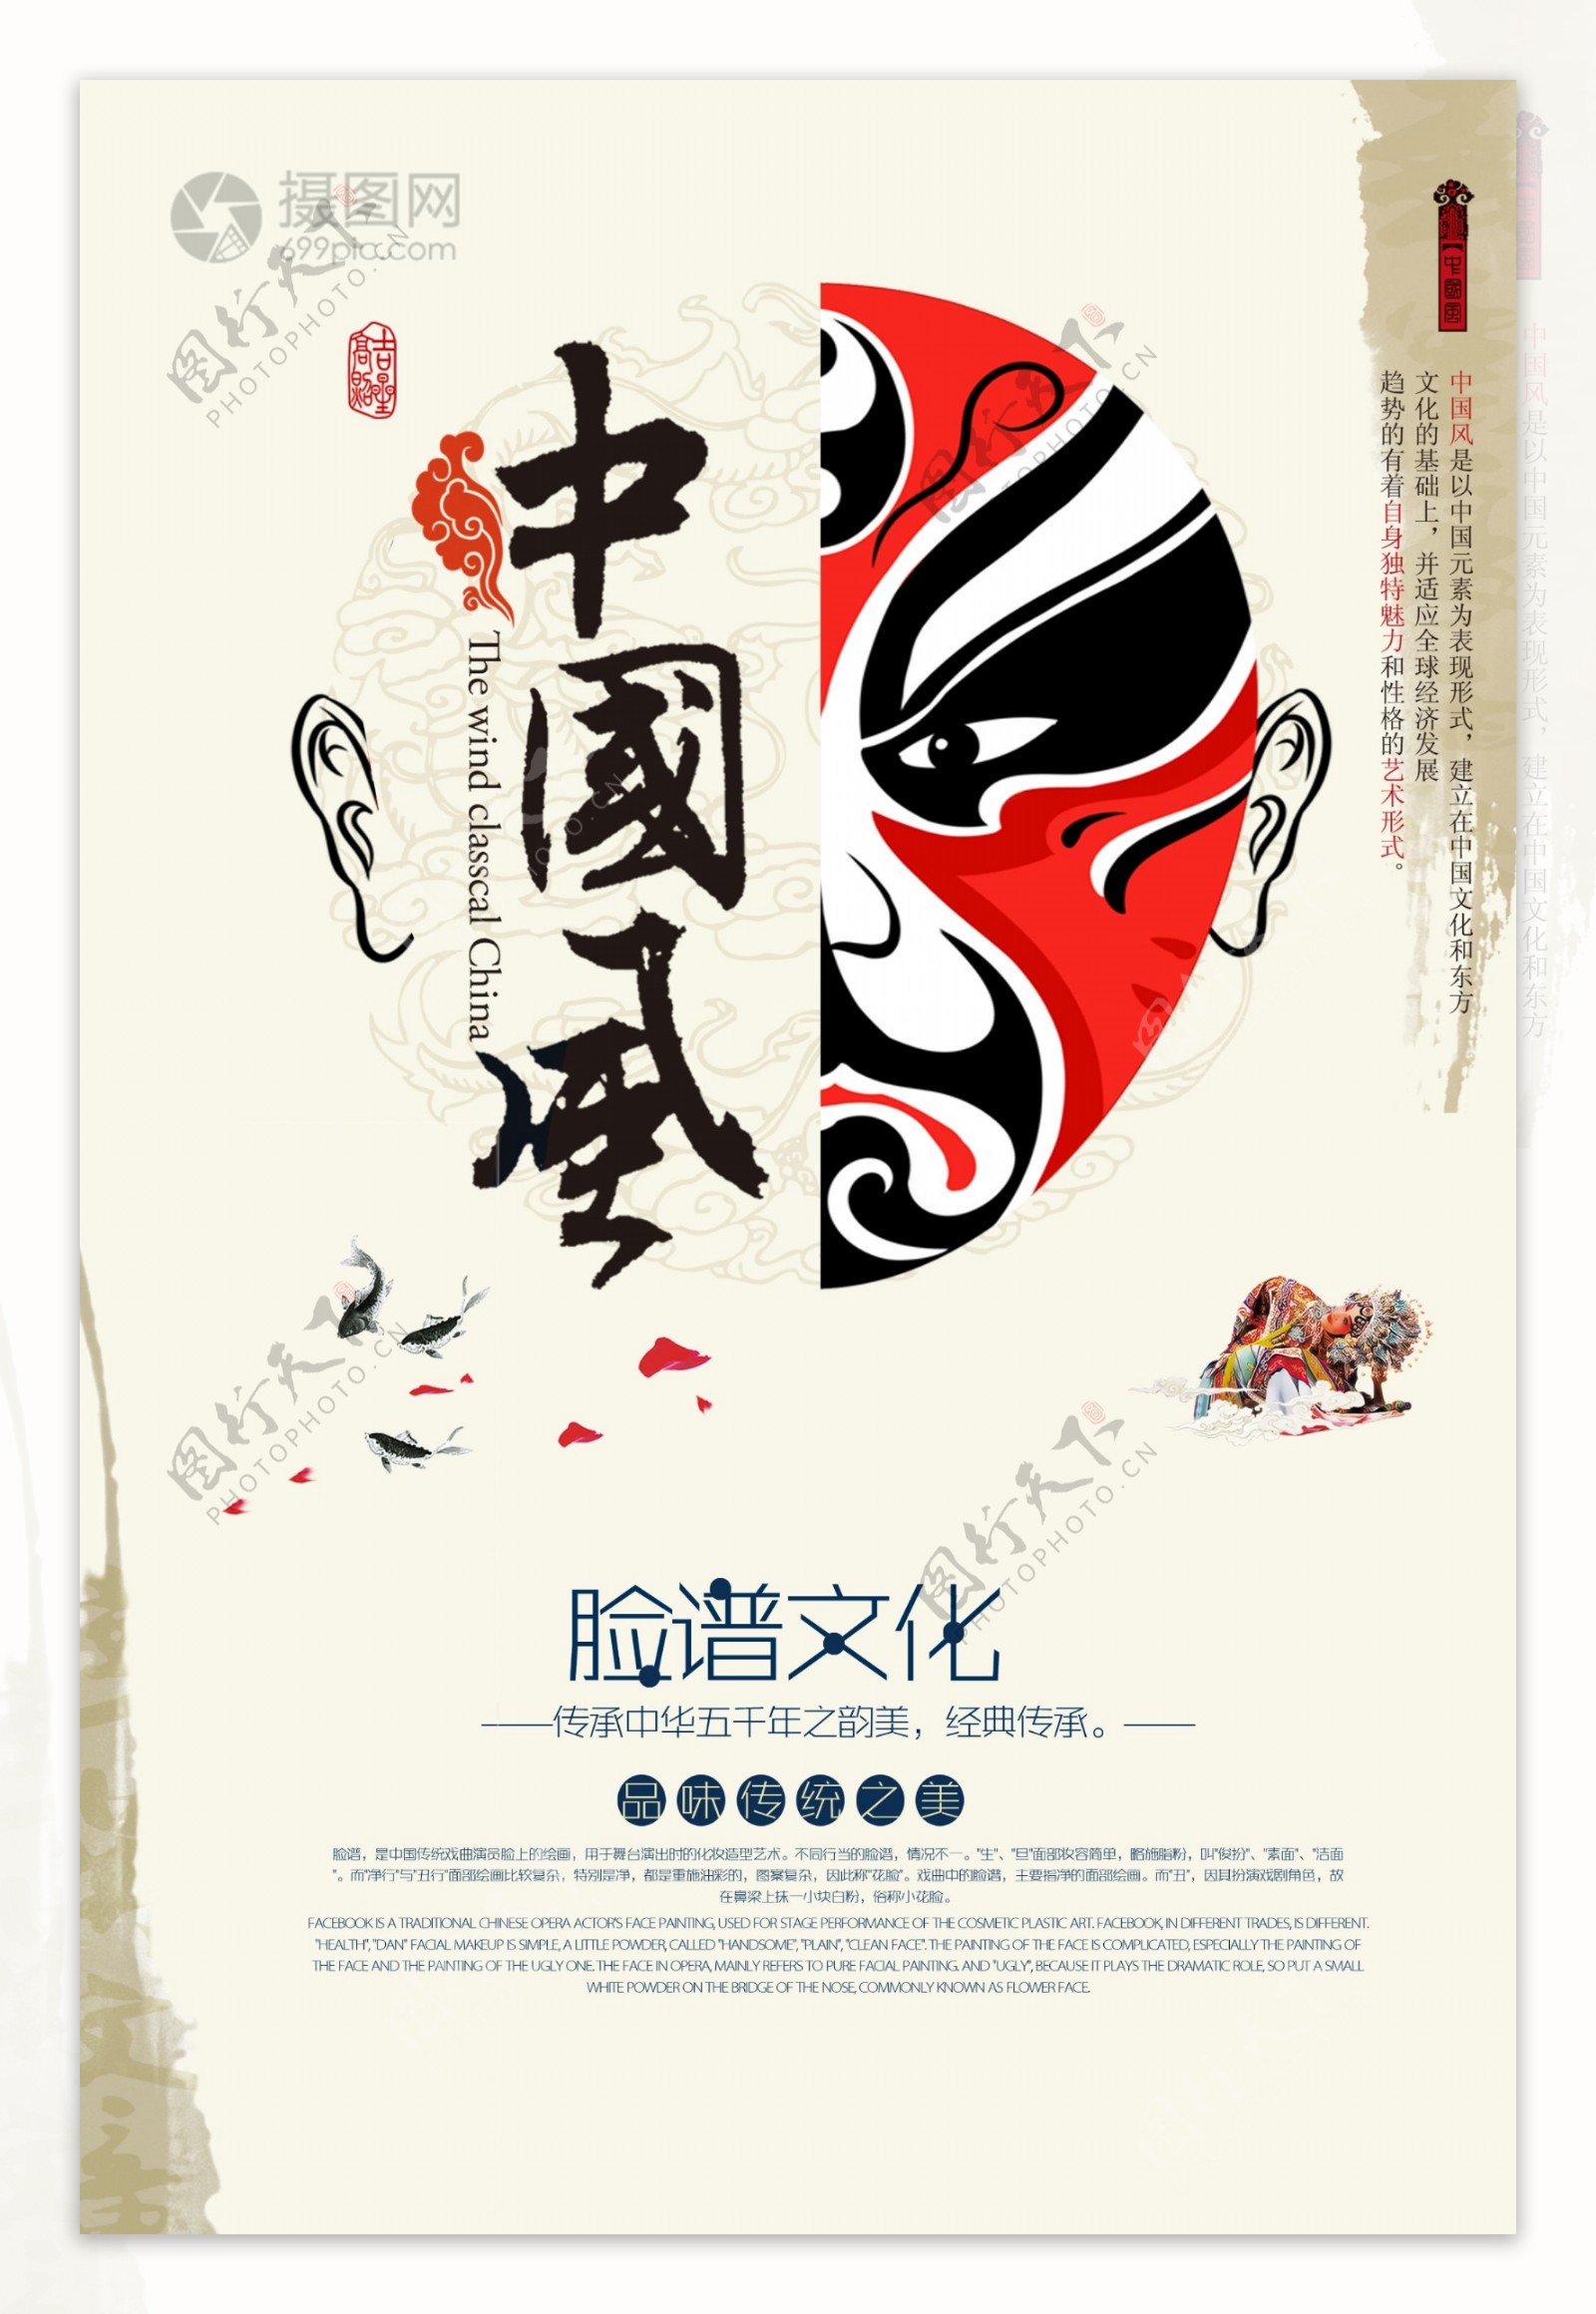 中国风脸谱文化海报